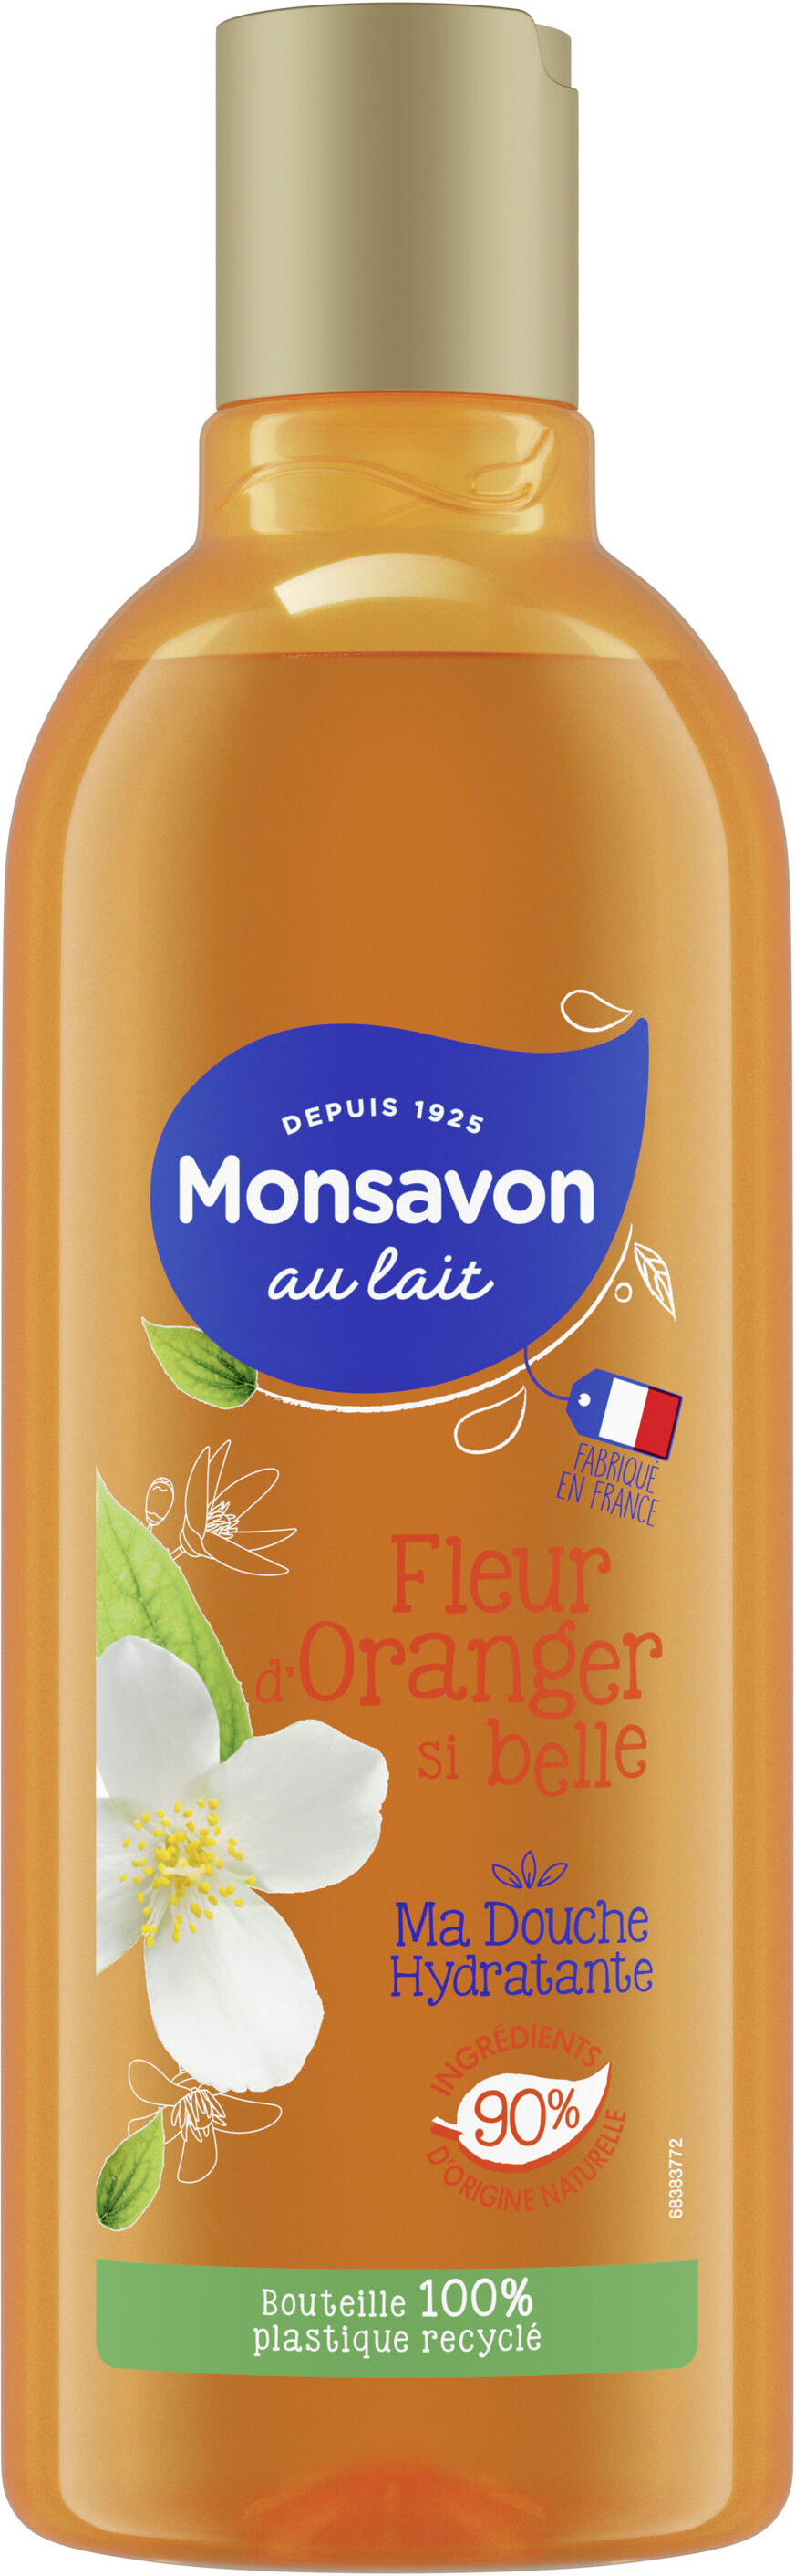 Monsavon Gel Douche Fleur d'oranger Si Belle - Produit - fr